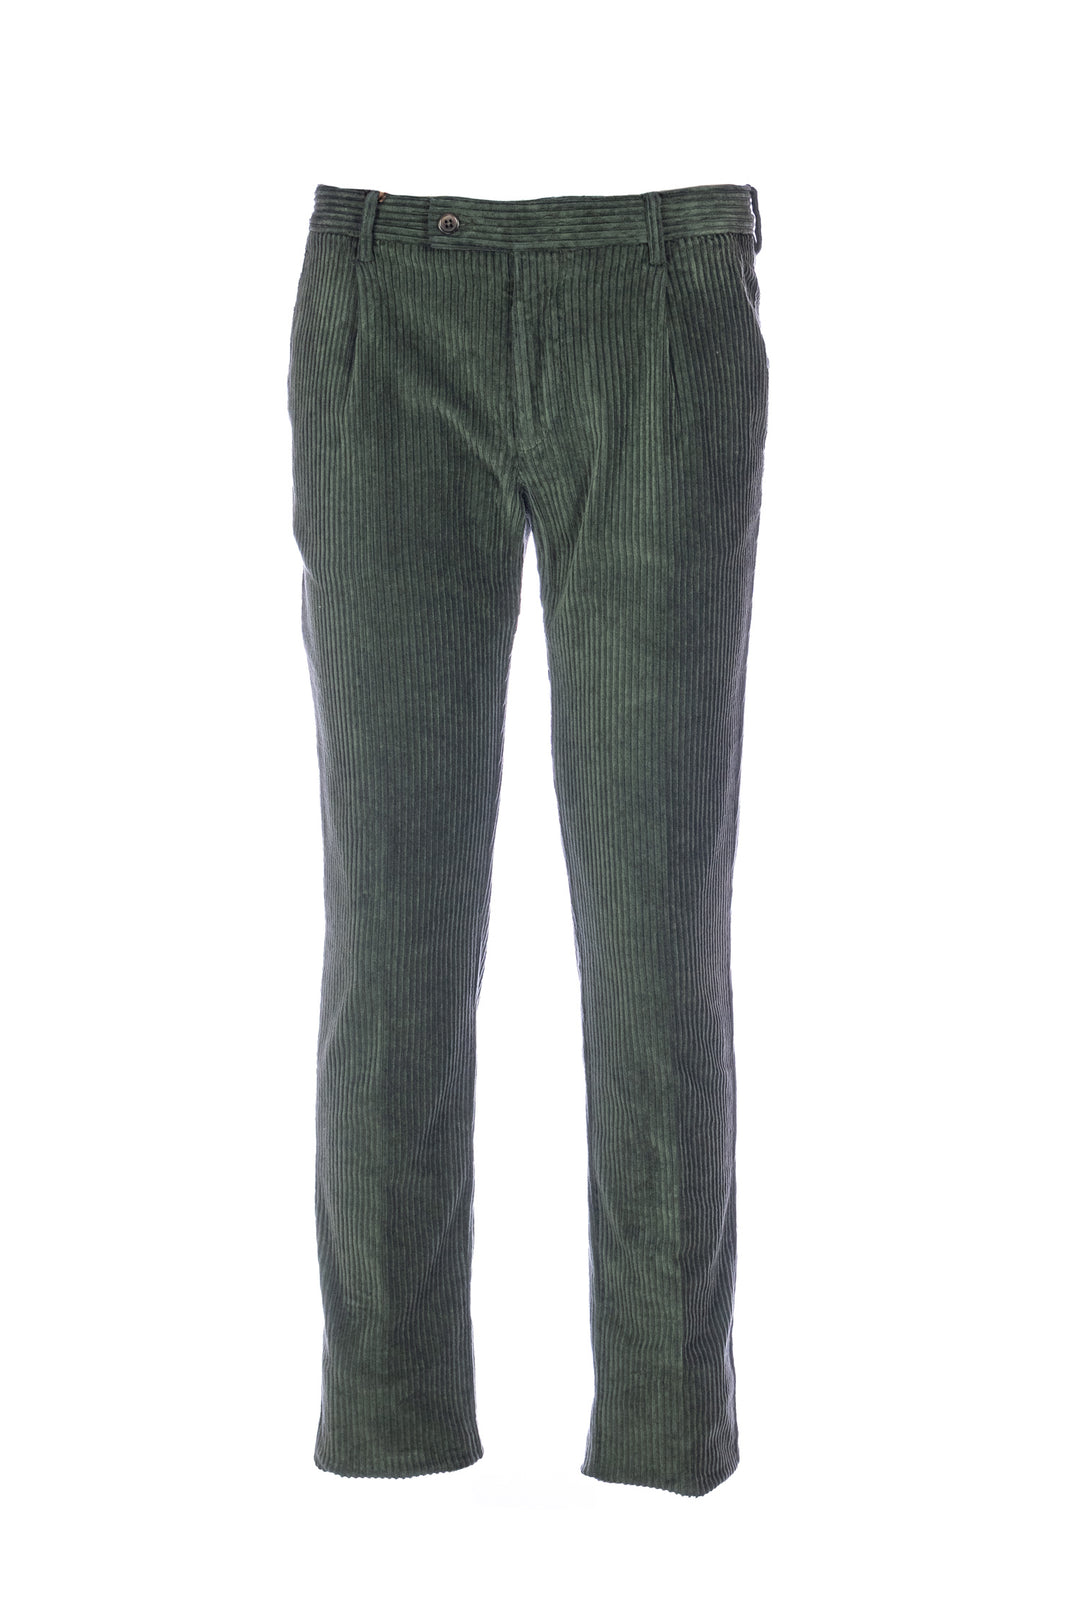 BERWICH Pantalone corduroy verde in velluto a coste con una pince - Mancinelli 1954